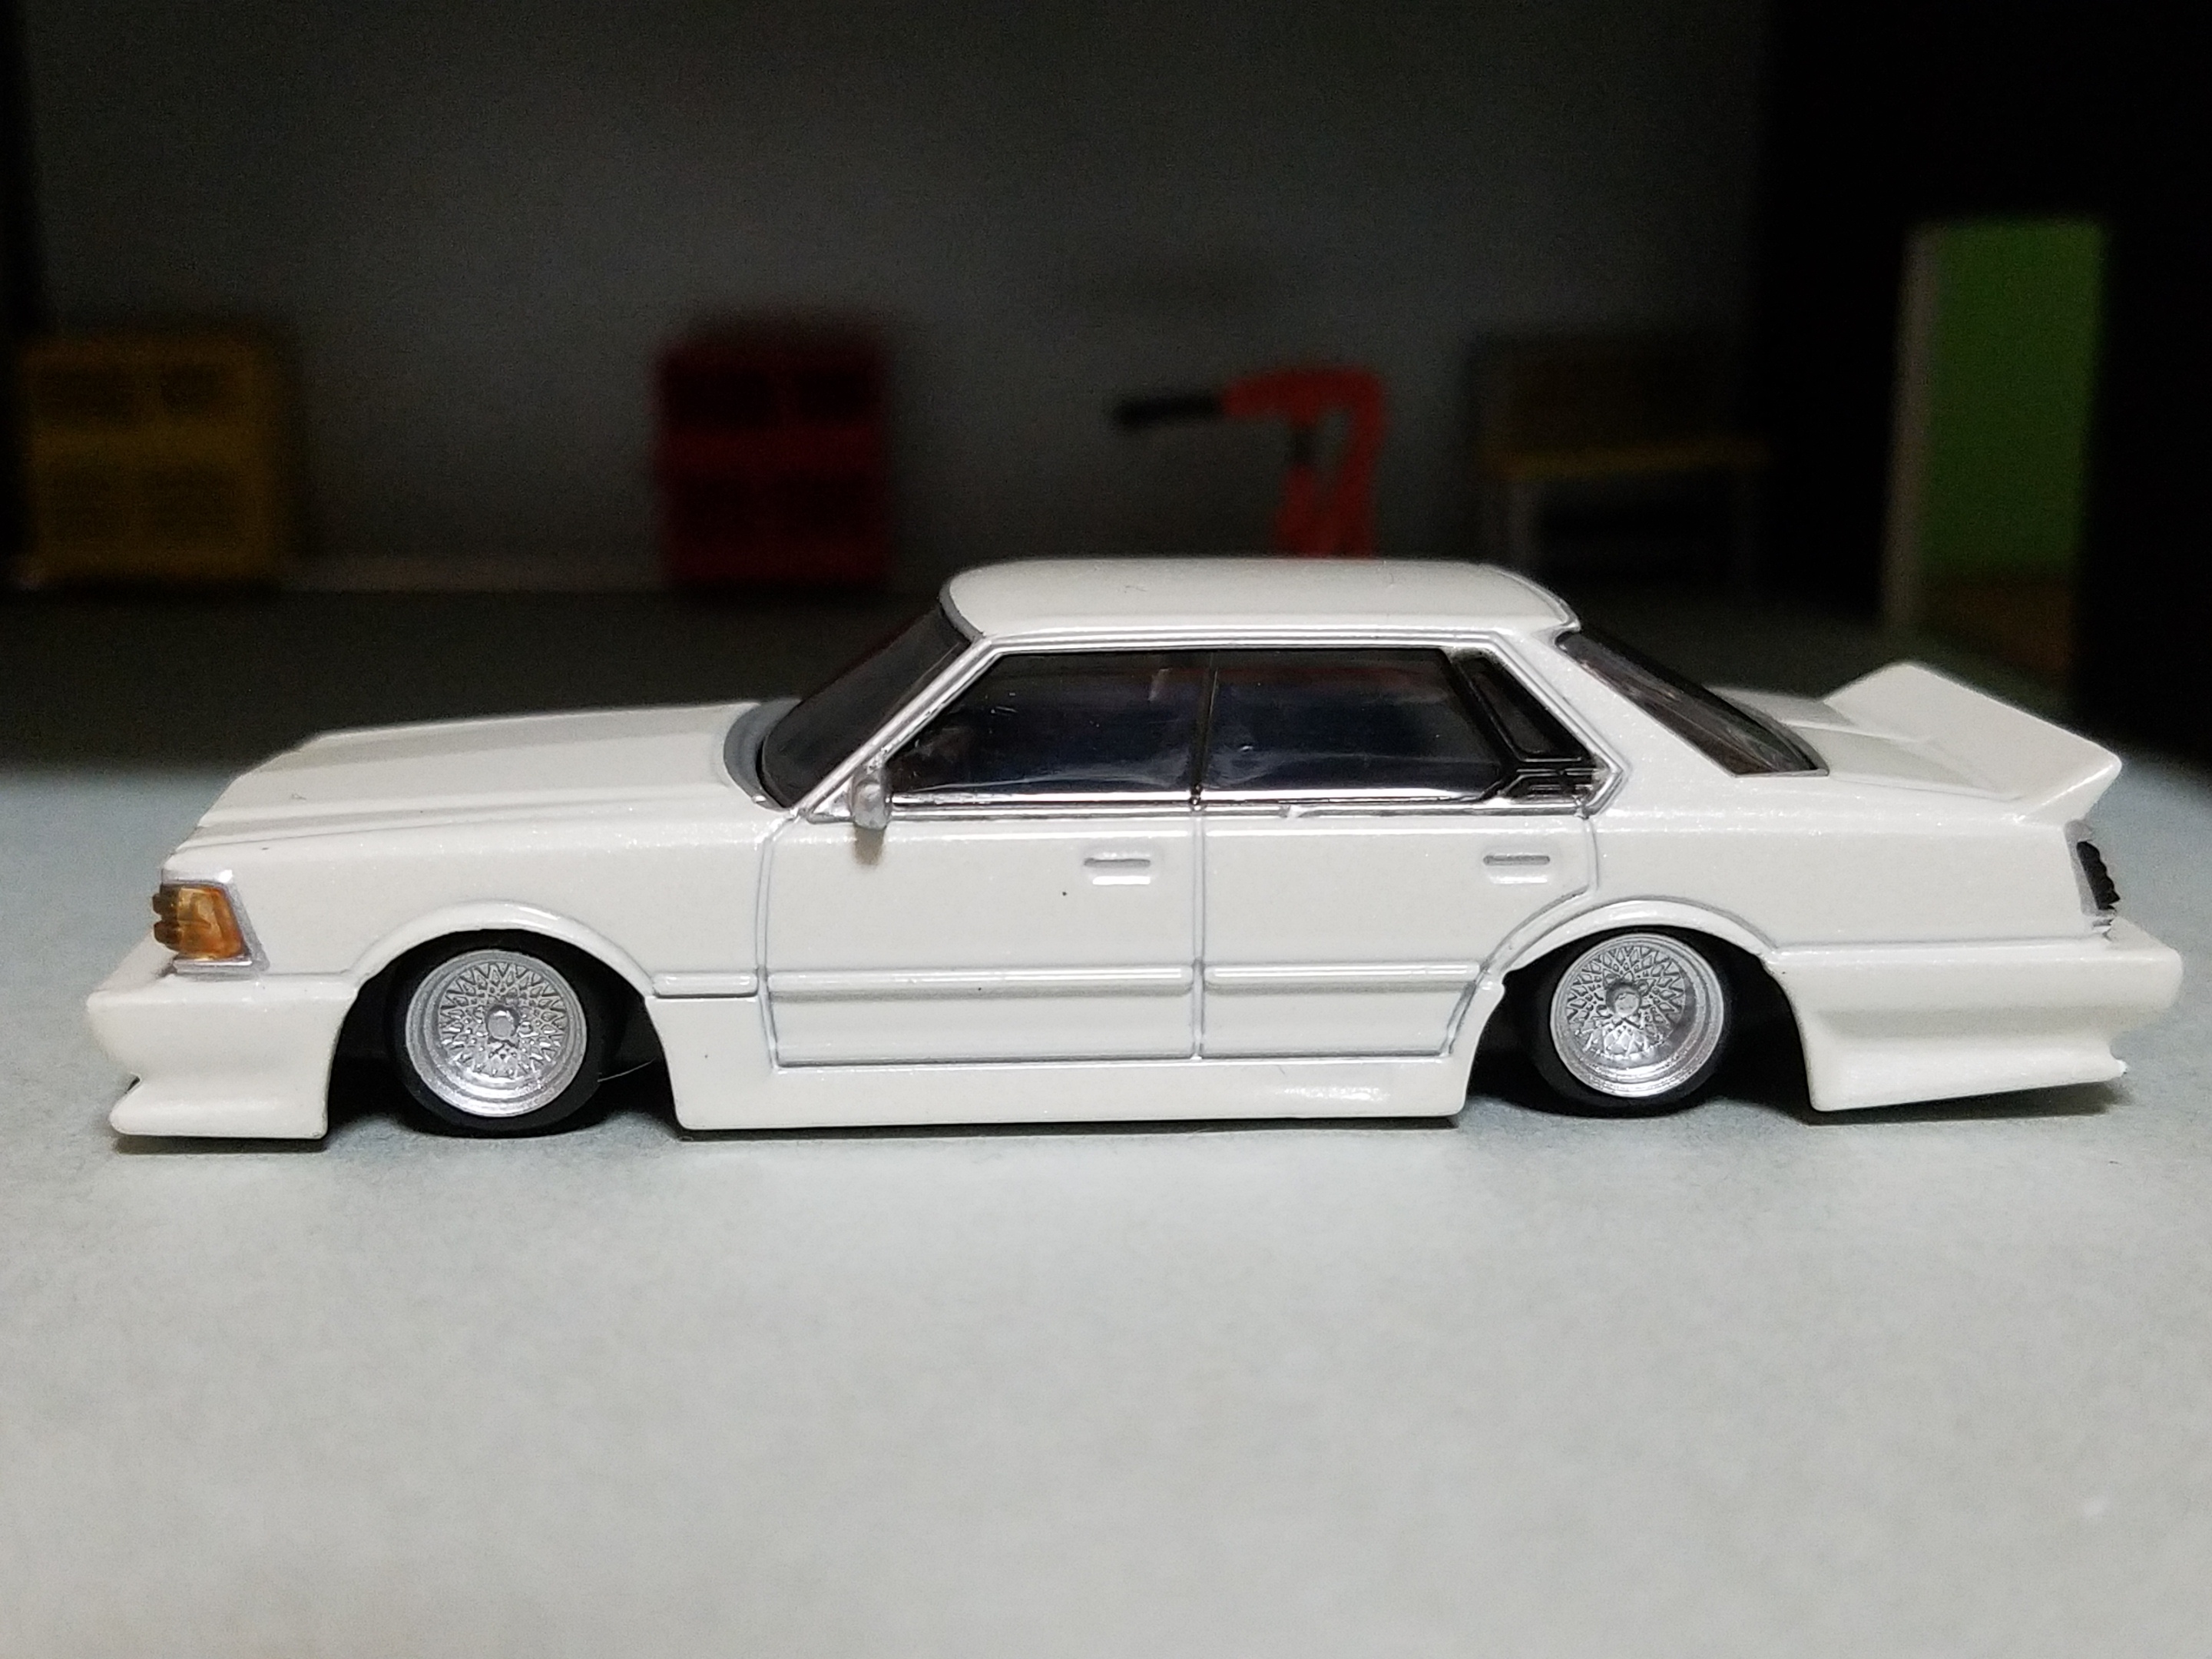 日産 K430 セドリック 1981年式 街道レーサー仕様 (アオシマ) - 日産 